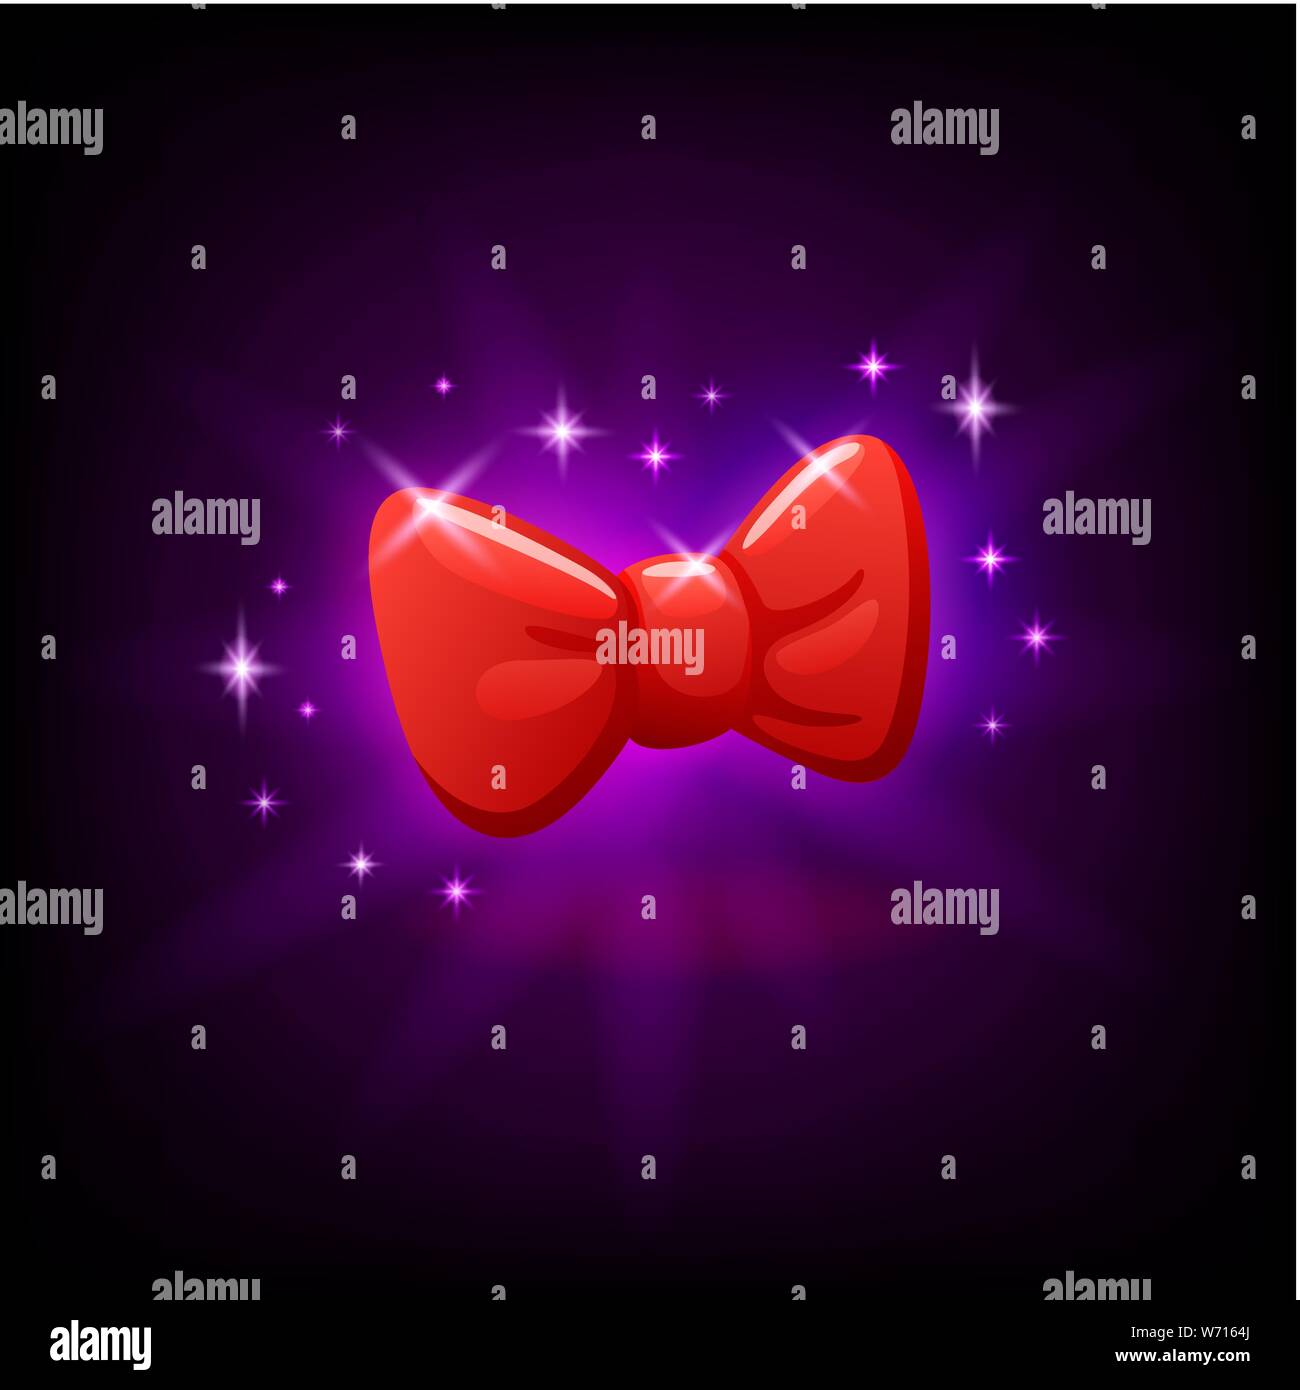 Red bow tie icona dello slot per casinò online o gioco per cellulare, illustrazione vettoriale con scintillii sul viola scuro dello sfondo. Illustrazione Vettoriale